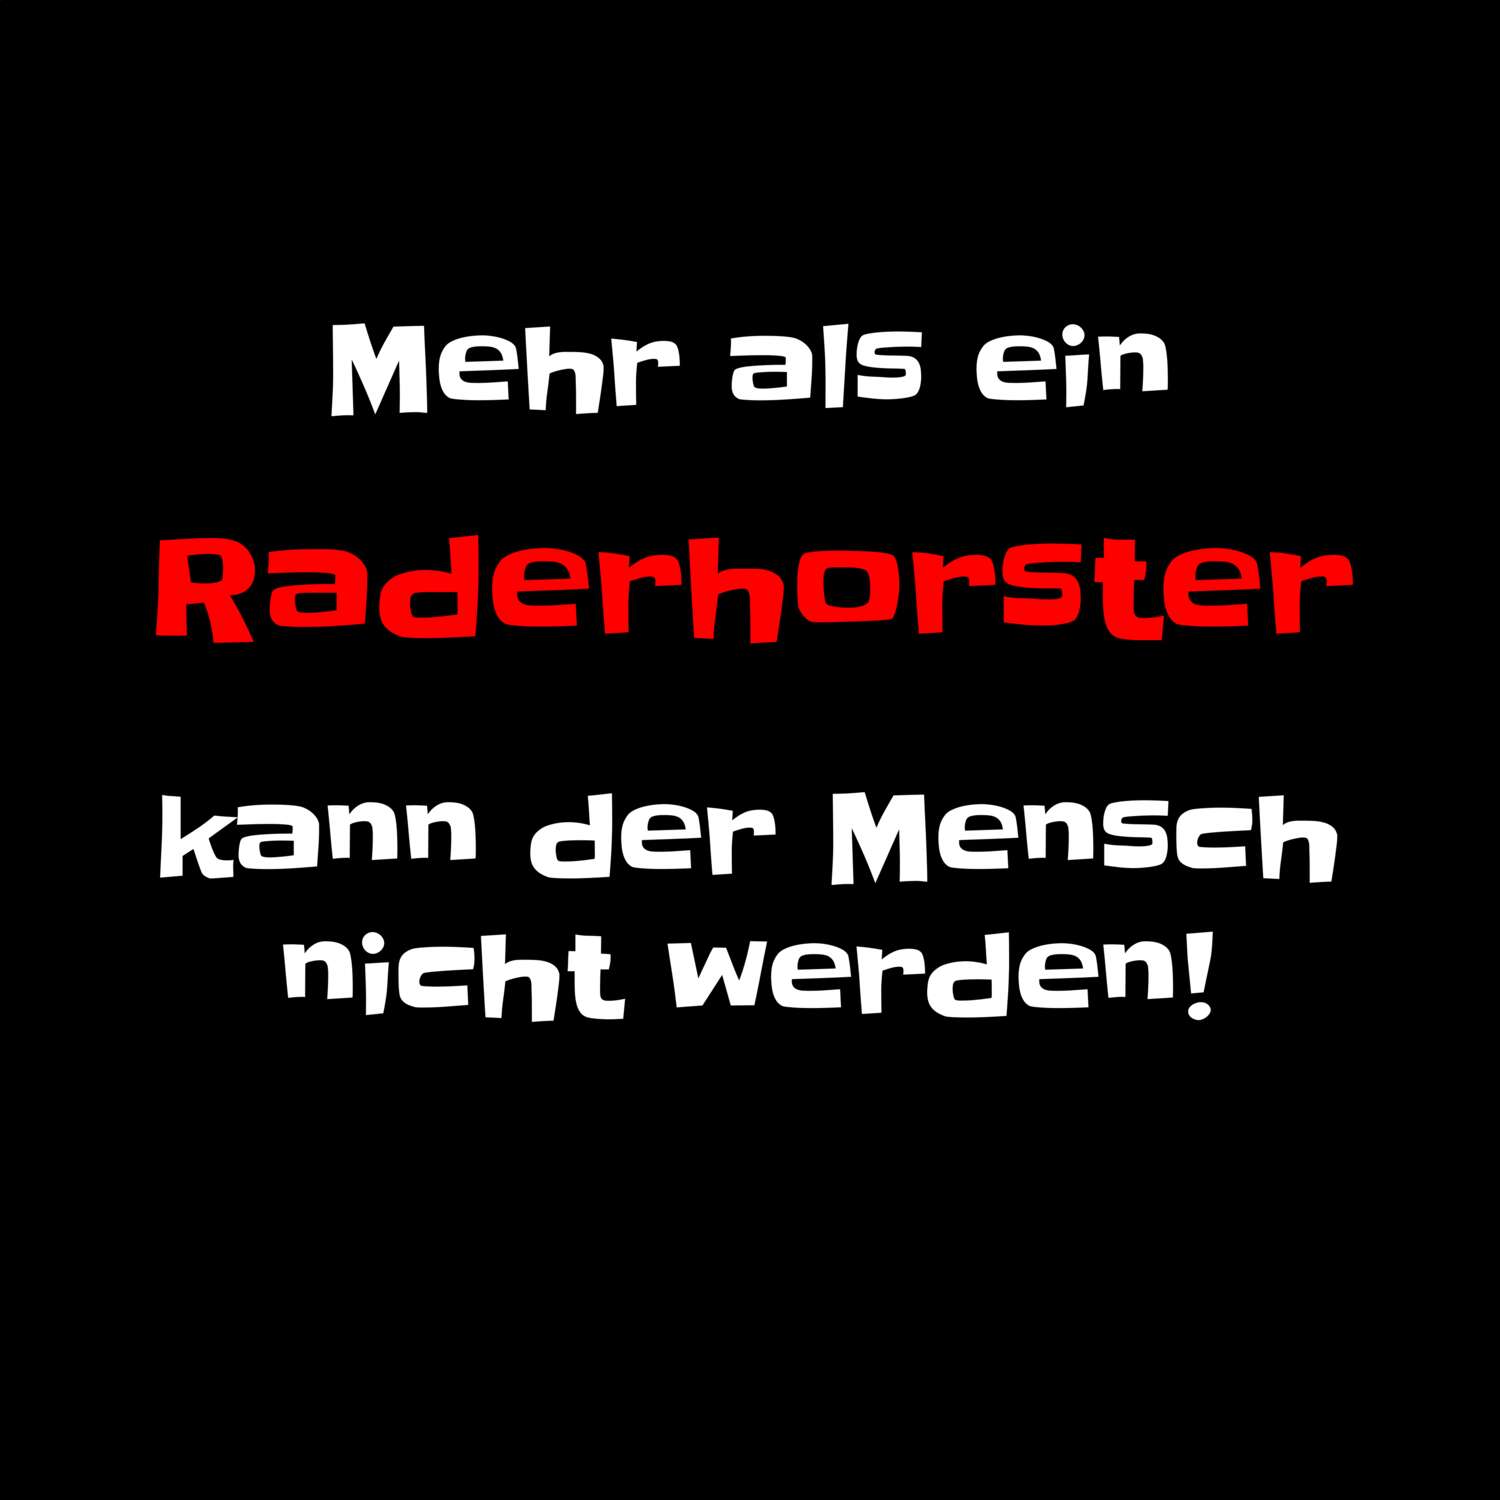 Raderhorst T-Shirt »Mehr als ein«